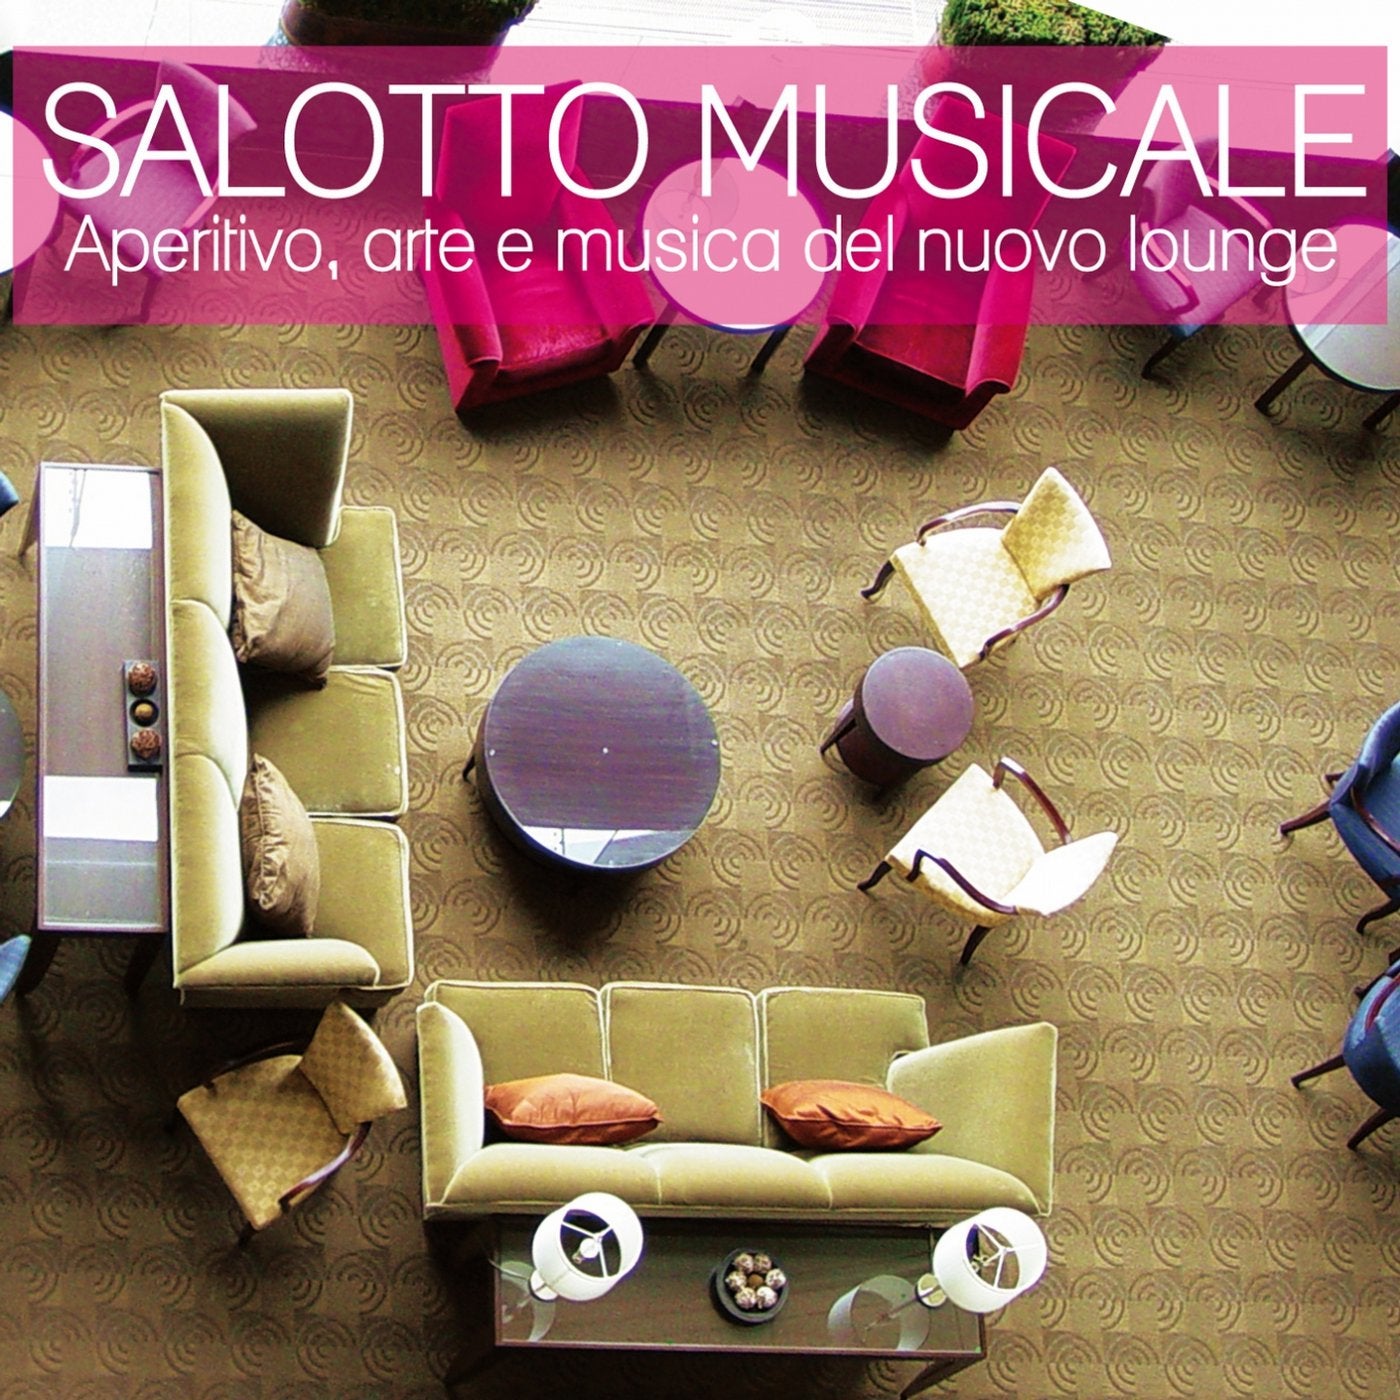 Salotto musicale (Aperitivo, arte e musica del nuovo lounge)